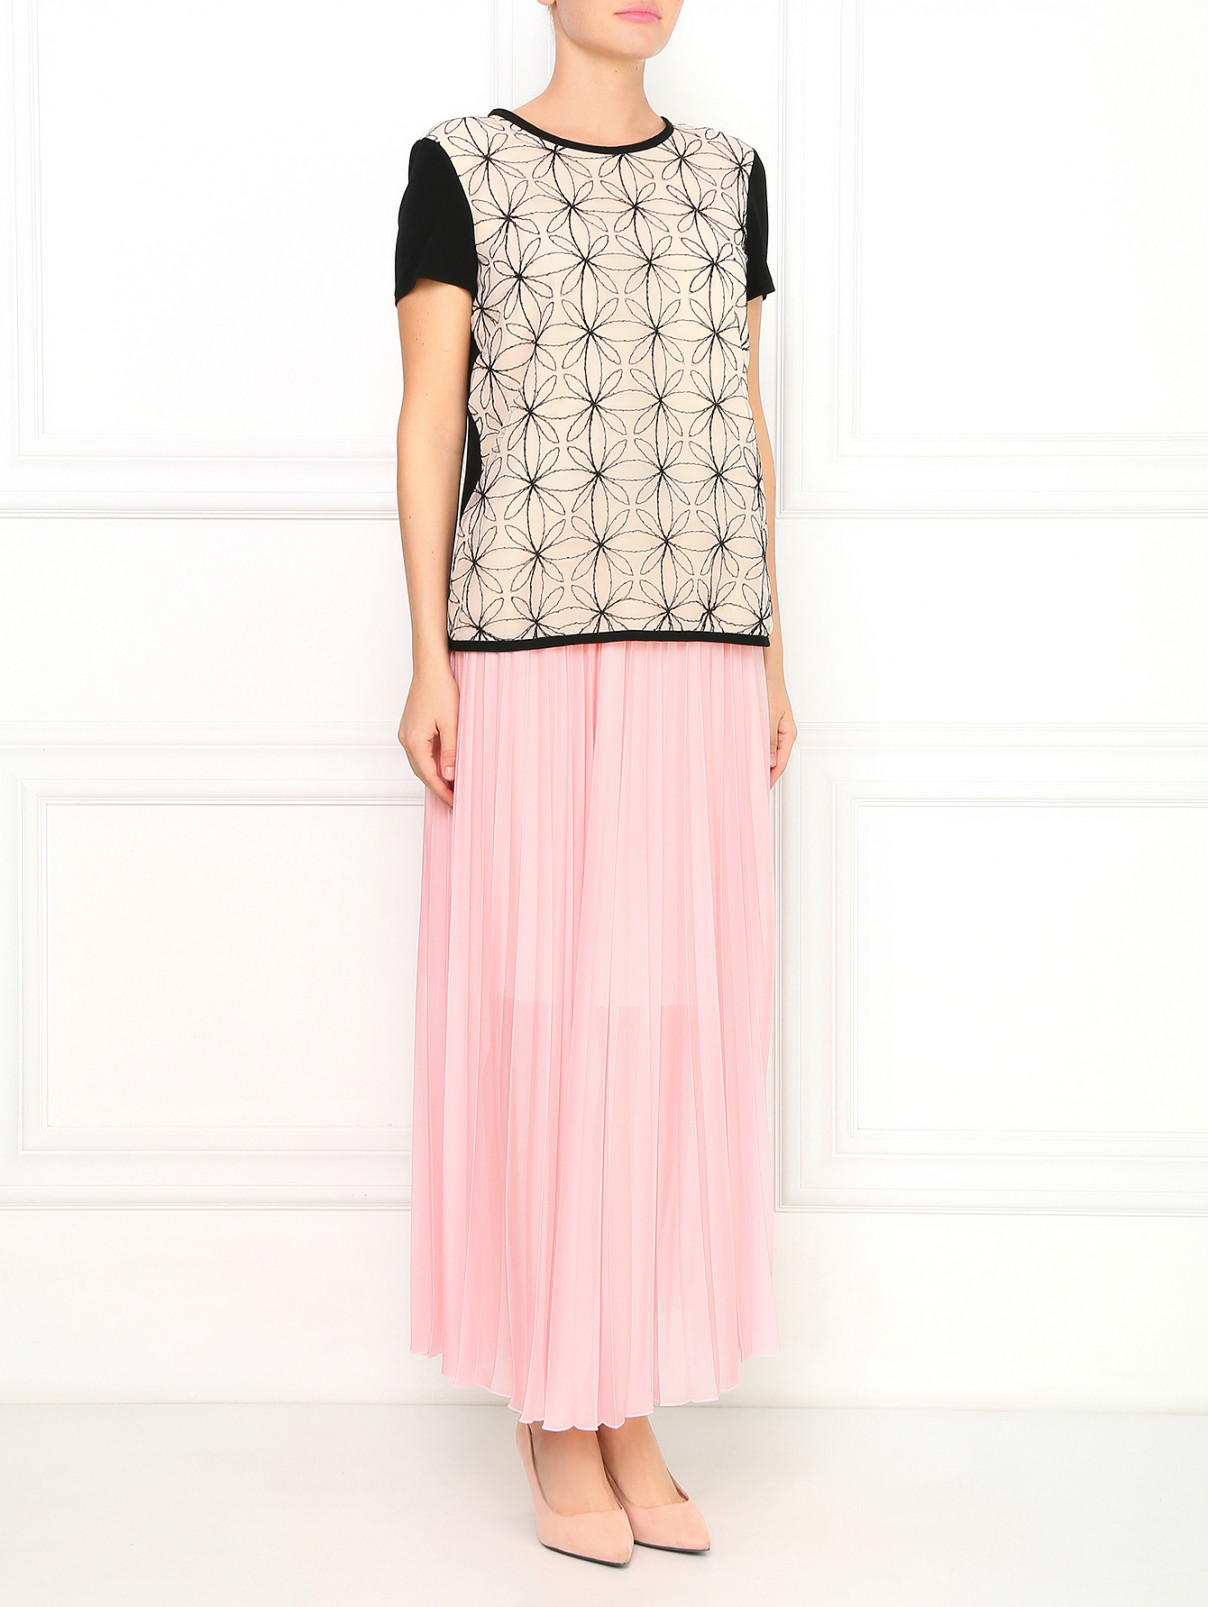 Трикотажная плиссированная юбка на резинке Sportmax Code  –  Модель Общий вид  – Цвет:  Розовый